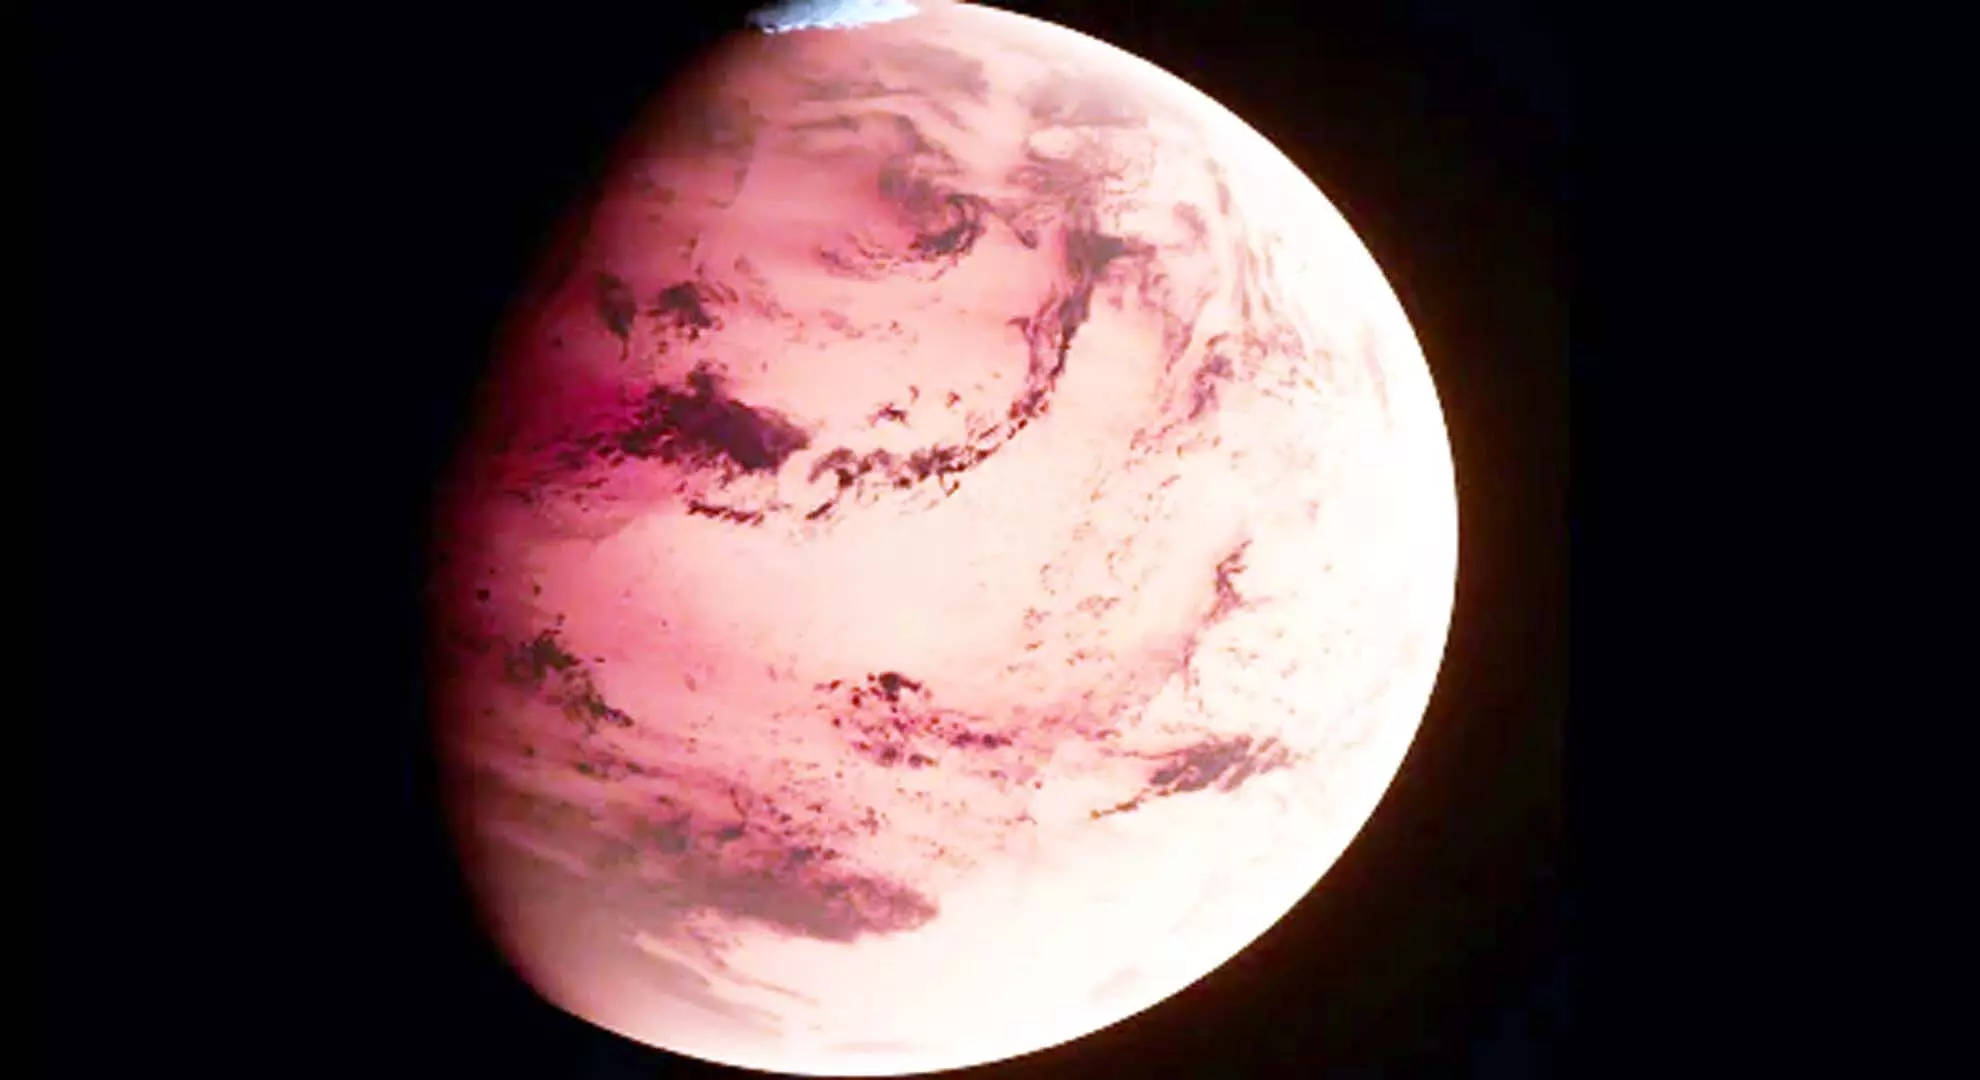 नासा ने अंतरिक्ष उत्साही लोगों के लिए ड्रीम जॉब की घोषणा की: नकली मंगल अनुभव